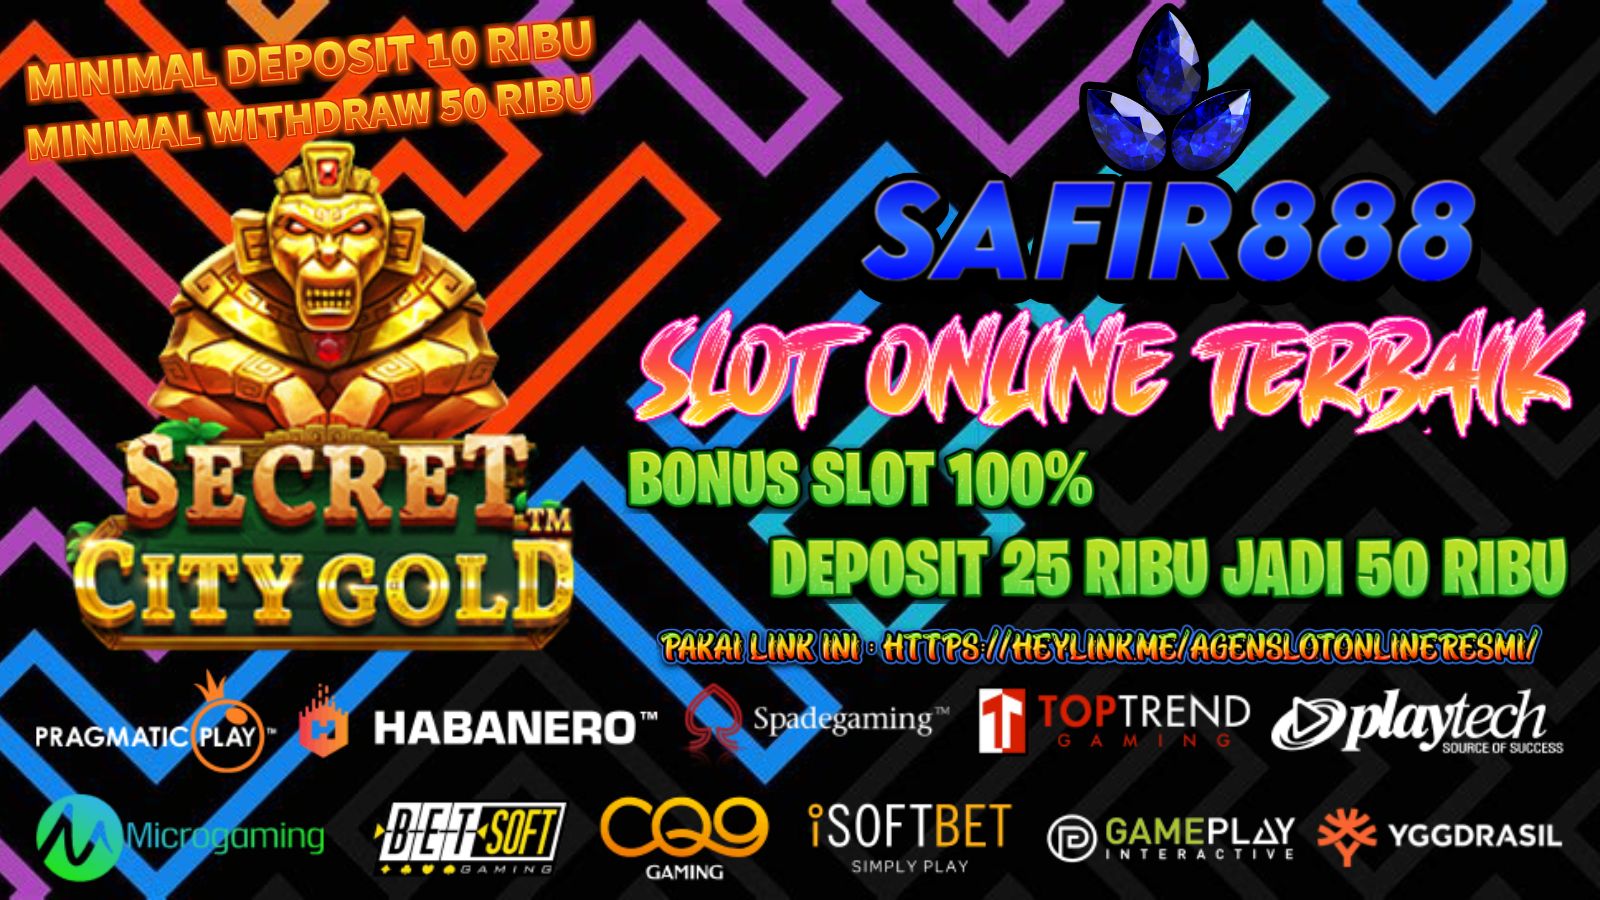 SAFIR888 - Slot Online Terbaik